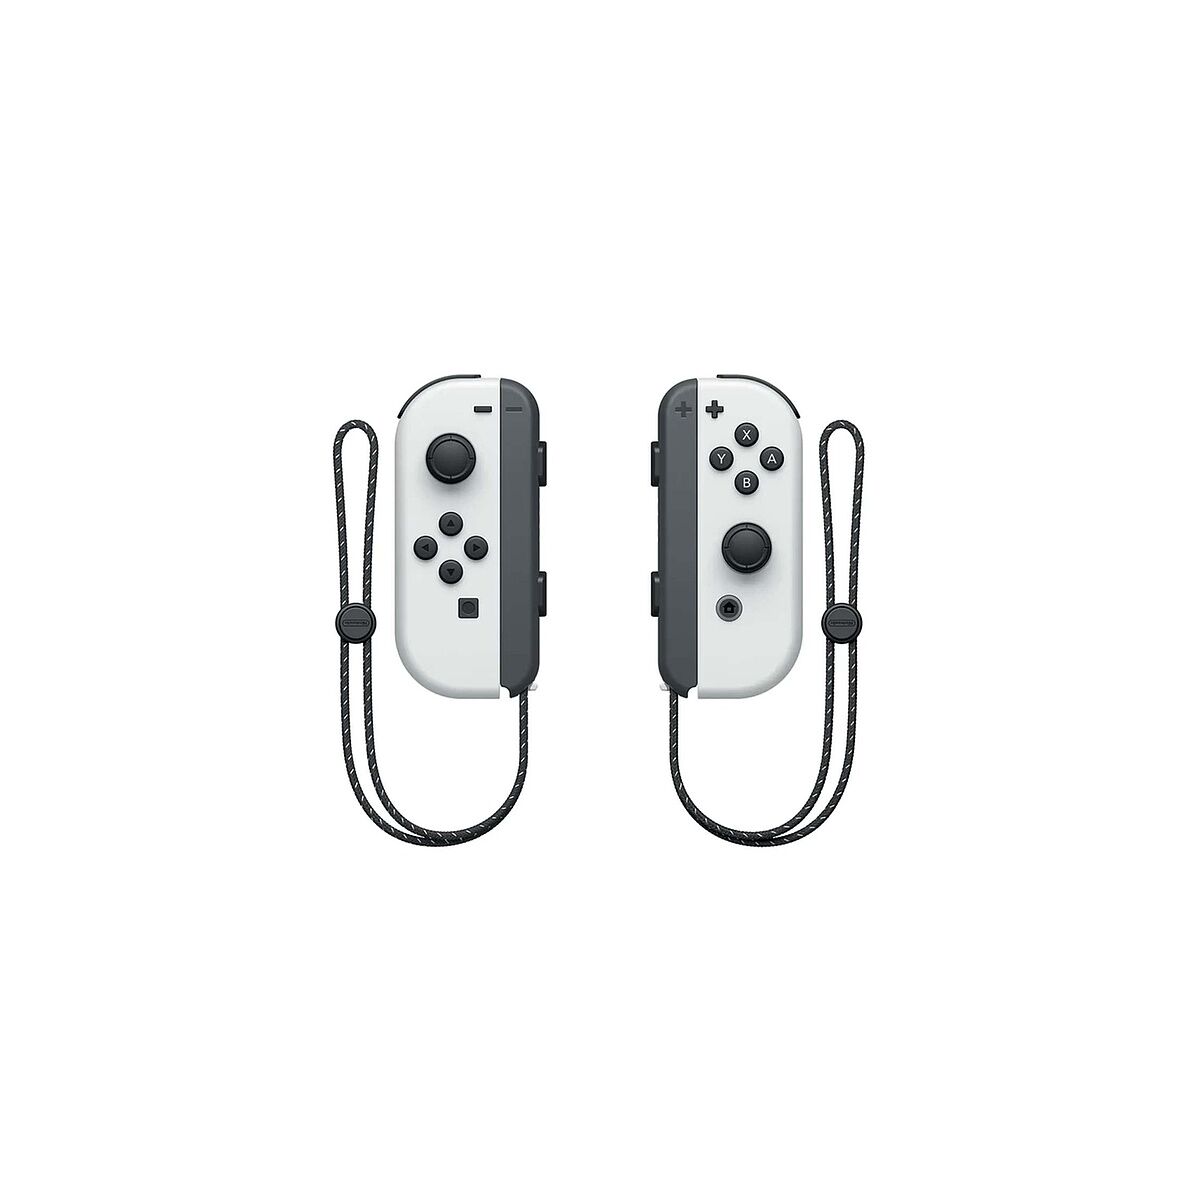 Kép 3/4 - Nintendo Switch OLED játékkonzol, fehér EU